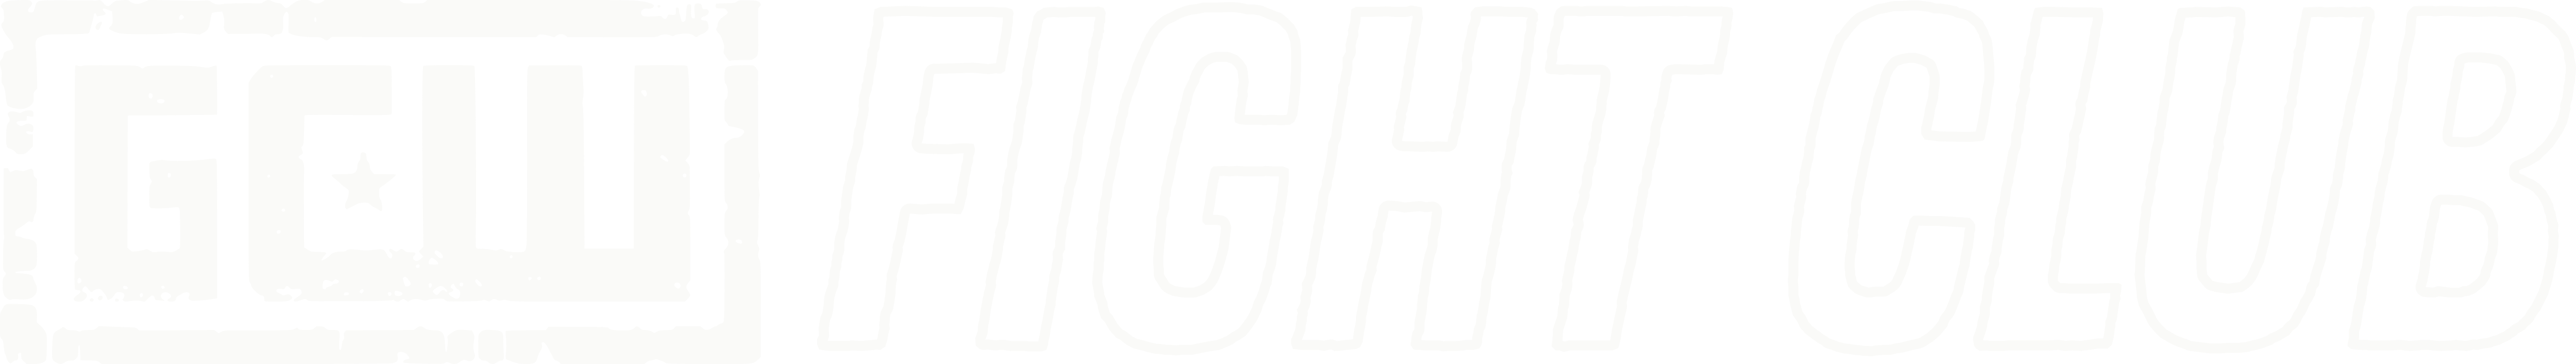 GCW Fight Club Logo by HellMen45 on DeviantArt